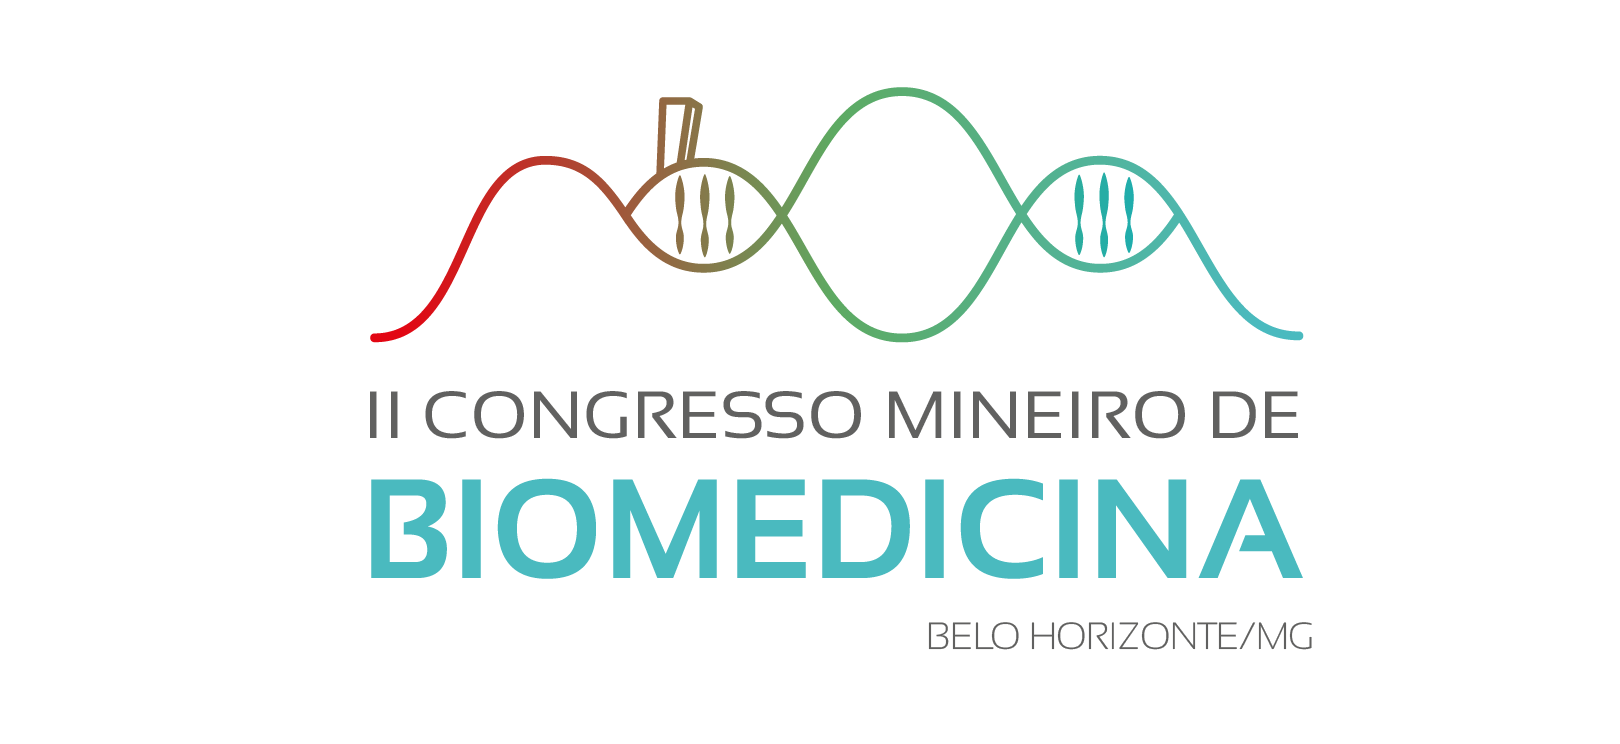 II Congresso Mineiro debate a inovação na era da Biomedicina